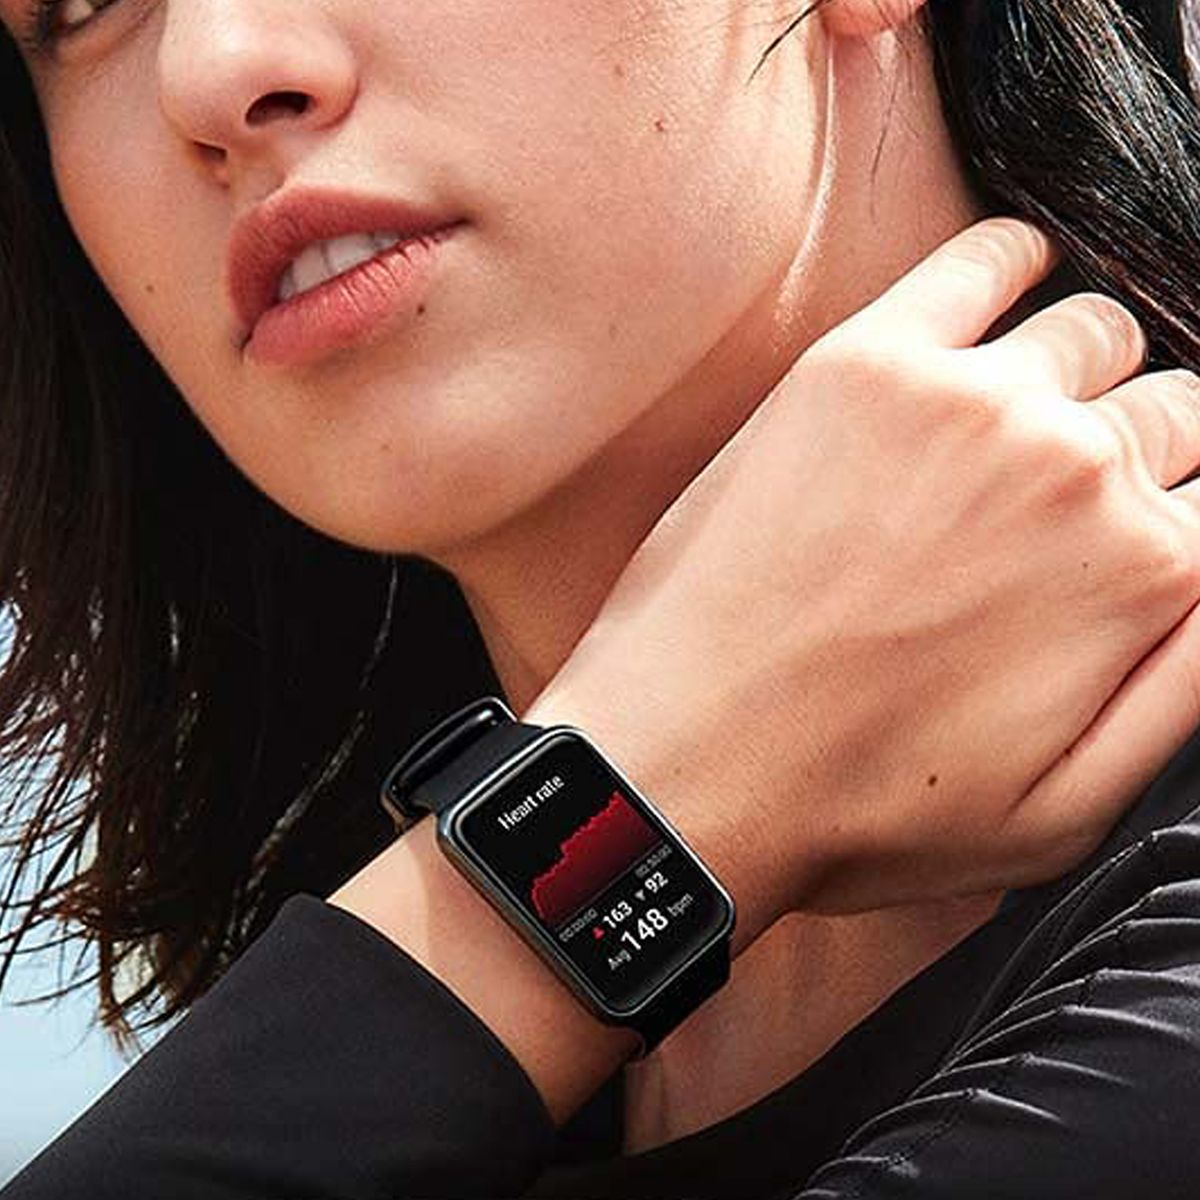 HUAWEI WATCH FIT - Smartwatch con cuerpo de metal, pantalla AMOLED de  1,64”, hasta 10 días de batería, 96 modos de entrenamiento, GPS  incorporado